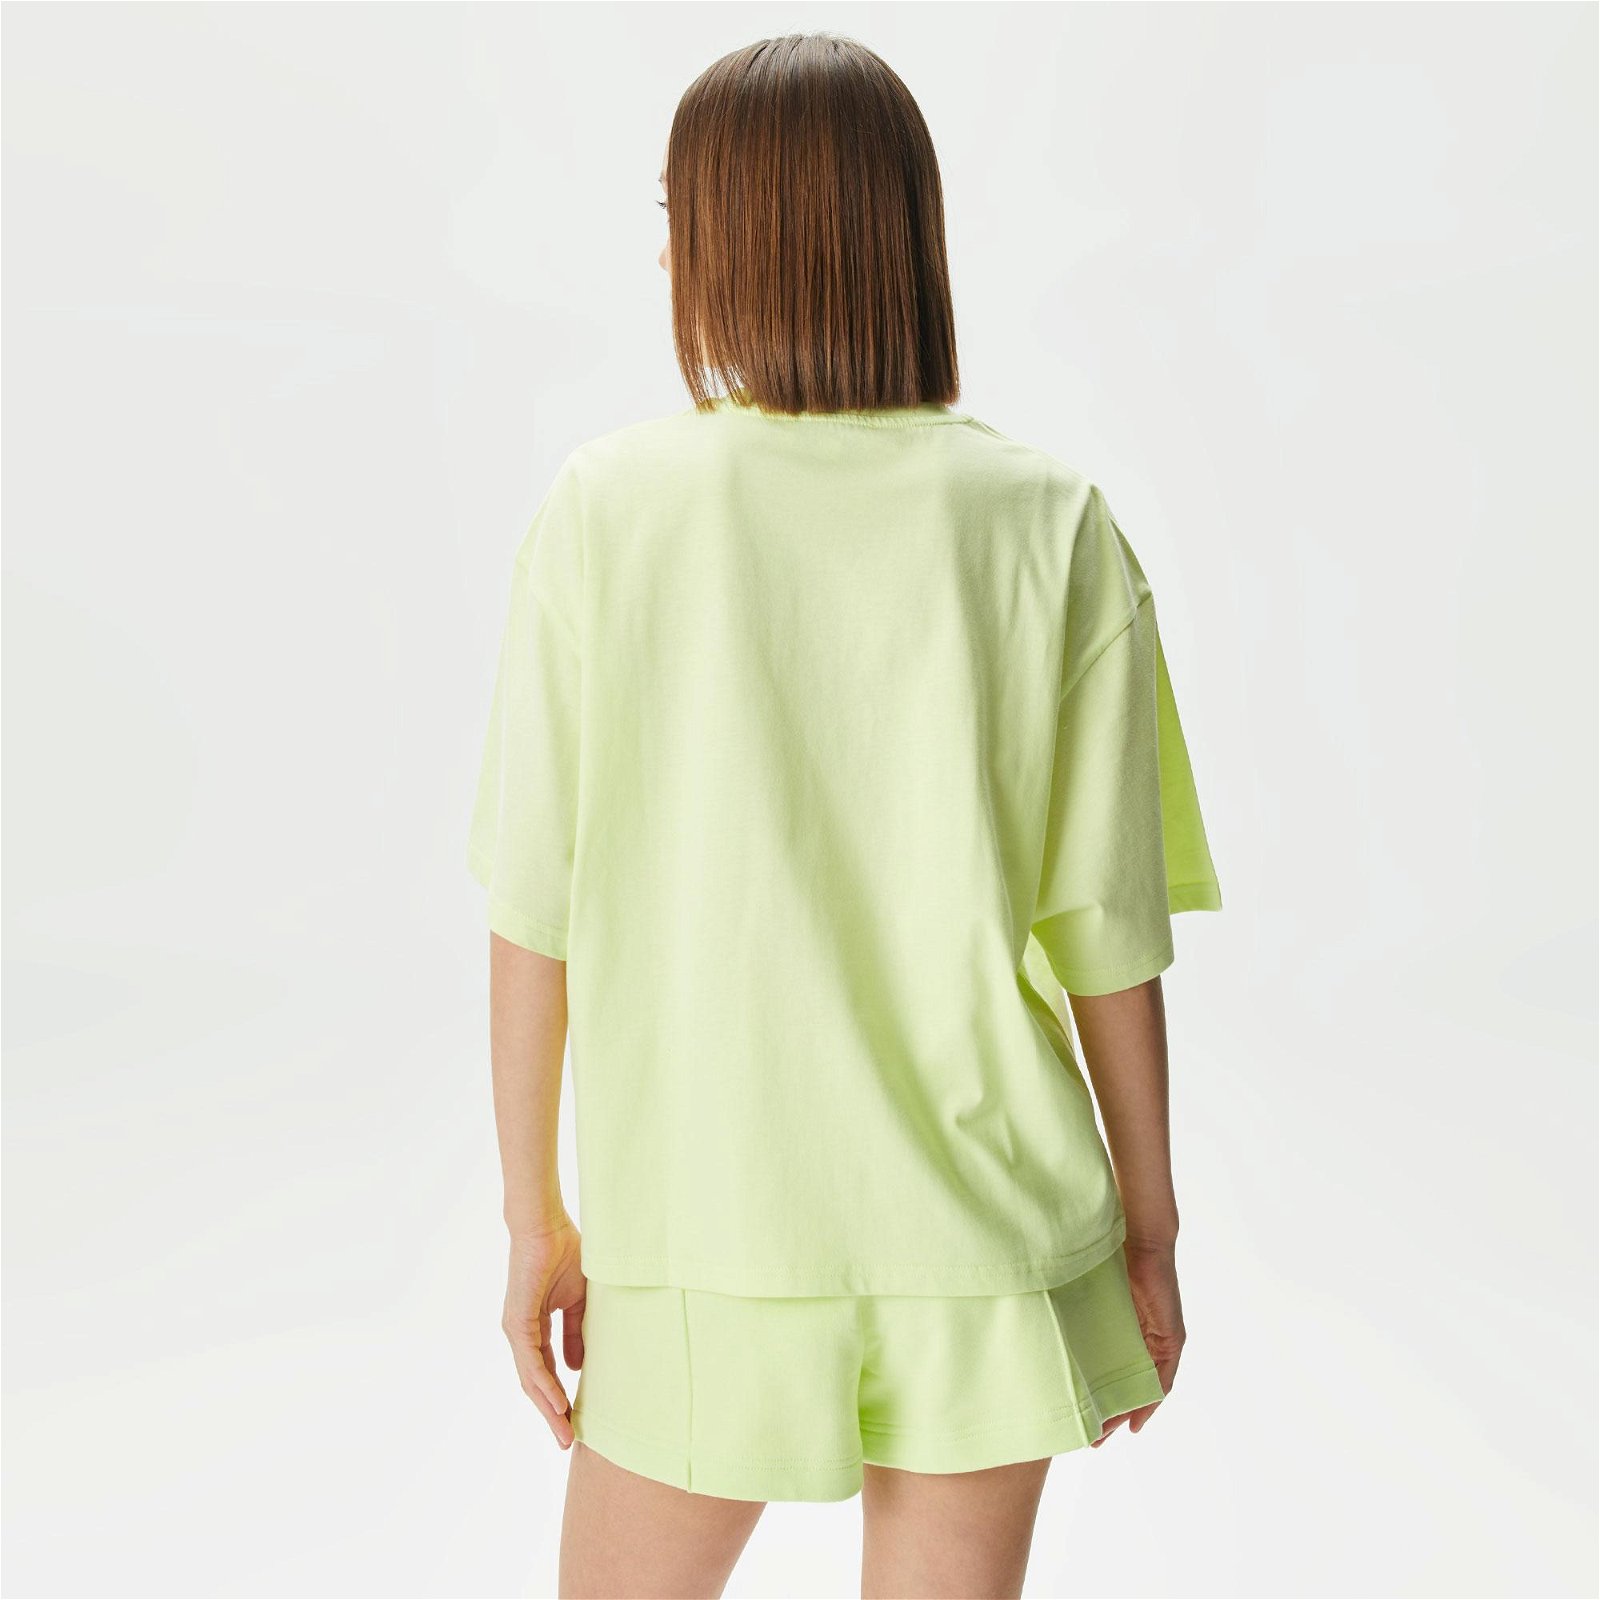 Les Benjamins 301 Kadın Yeşil T-Shirt